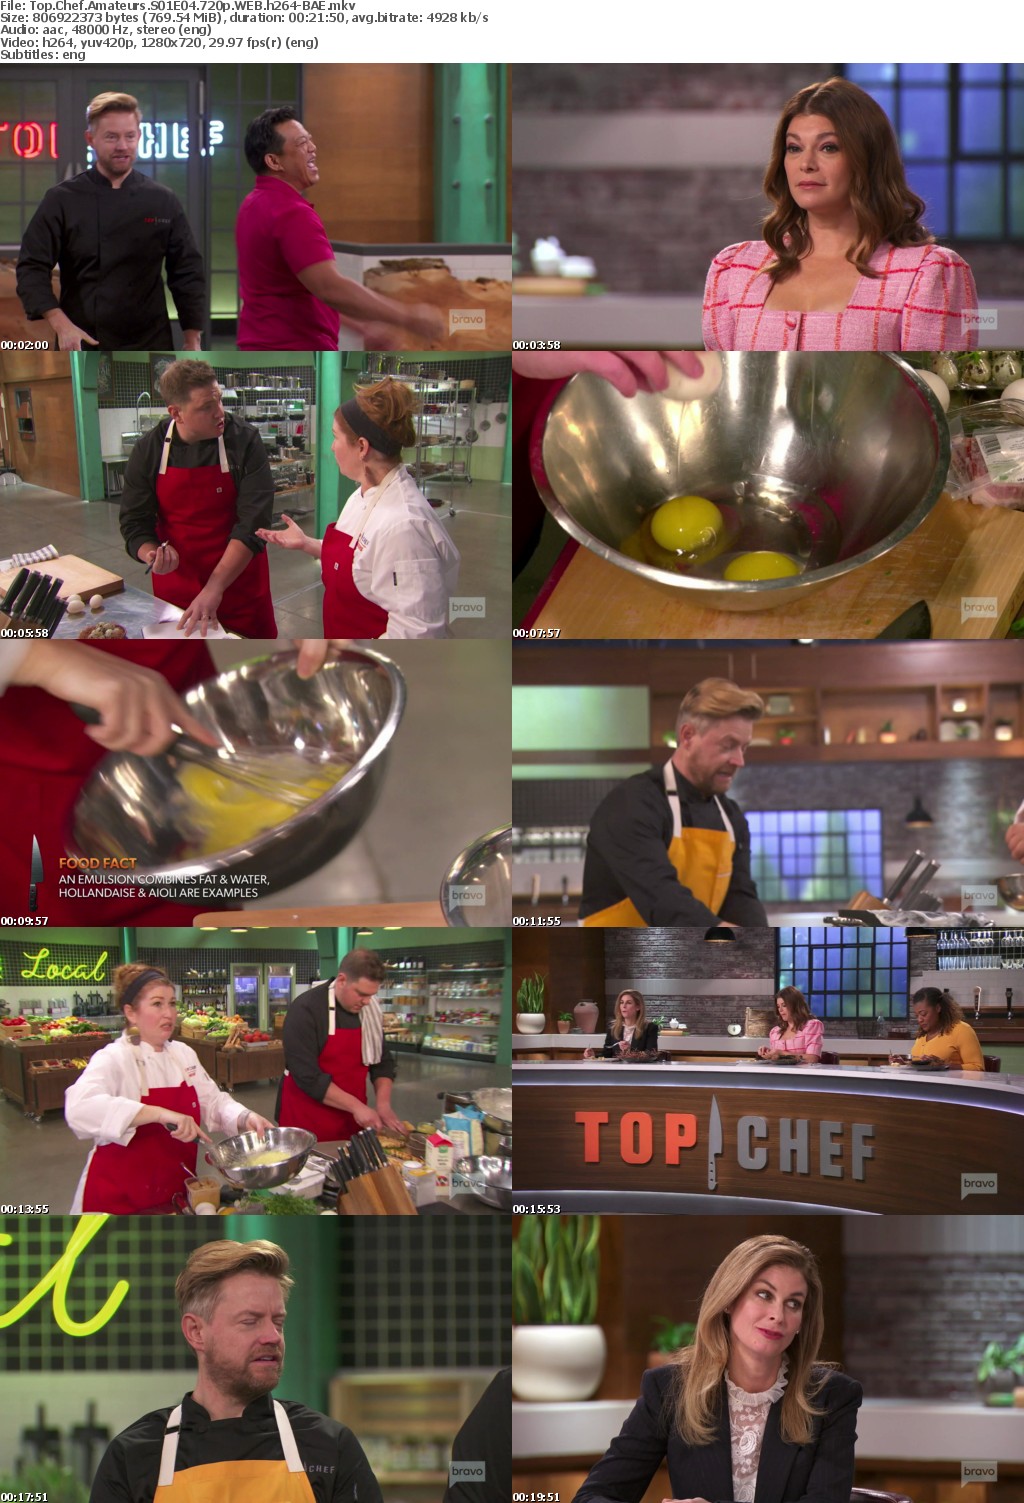 Top Chef Amateurs S01E04 720p WEB h264-BAE